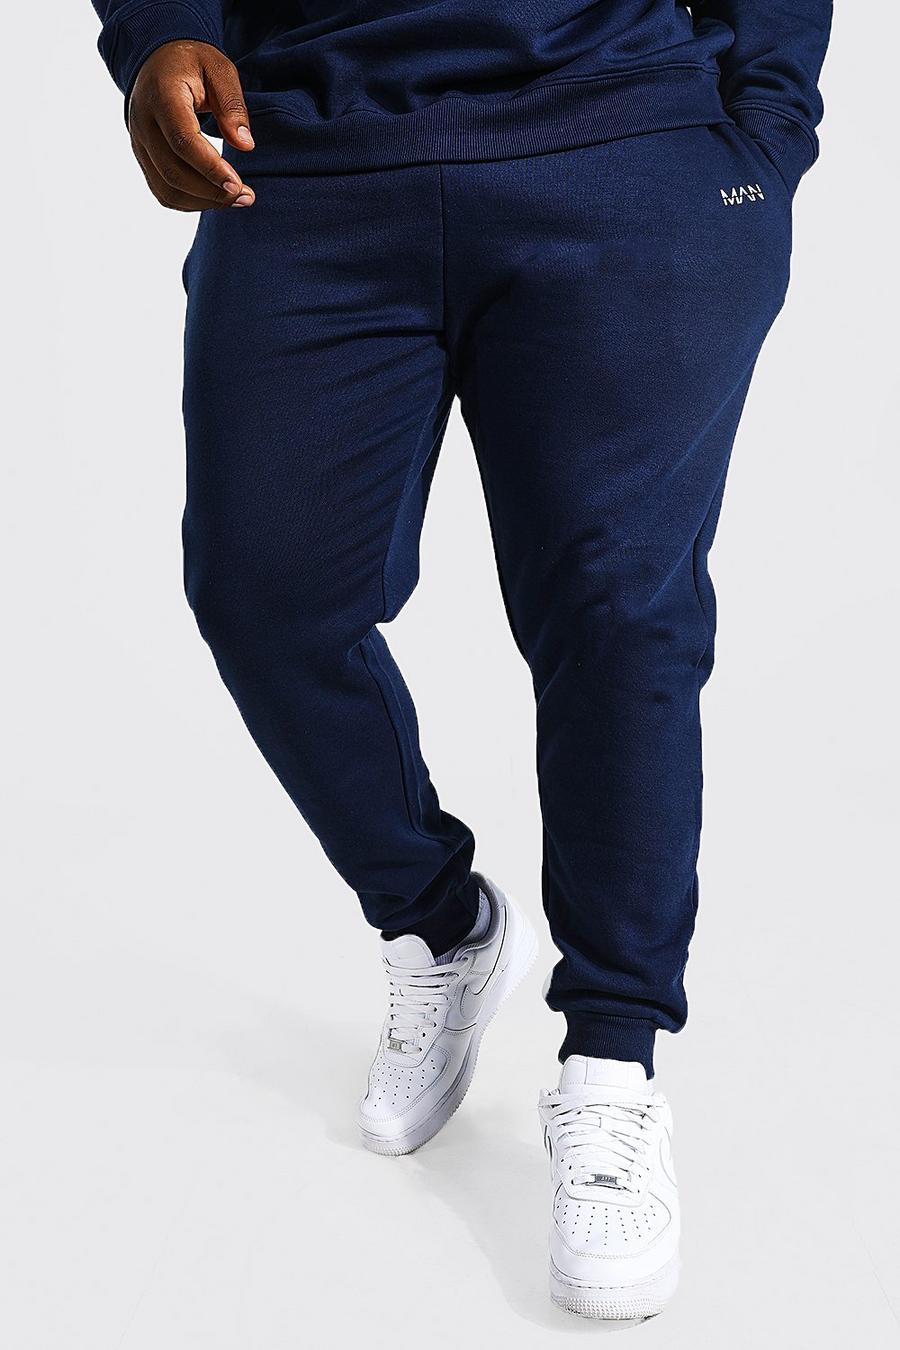 נייבי azul marino מכנסי ריצה סקיני מבד ממוחזר עם כיתוב חצוי Man, מידות גדולות